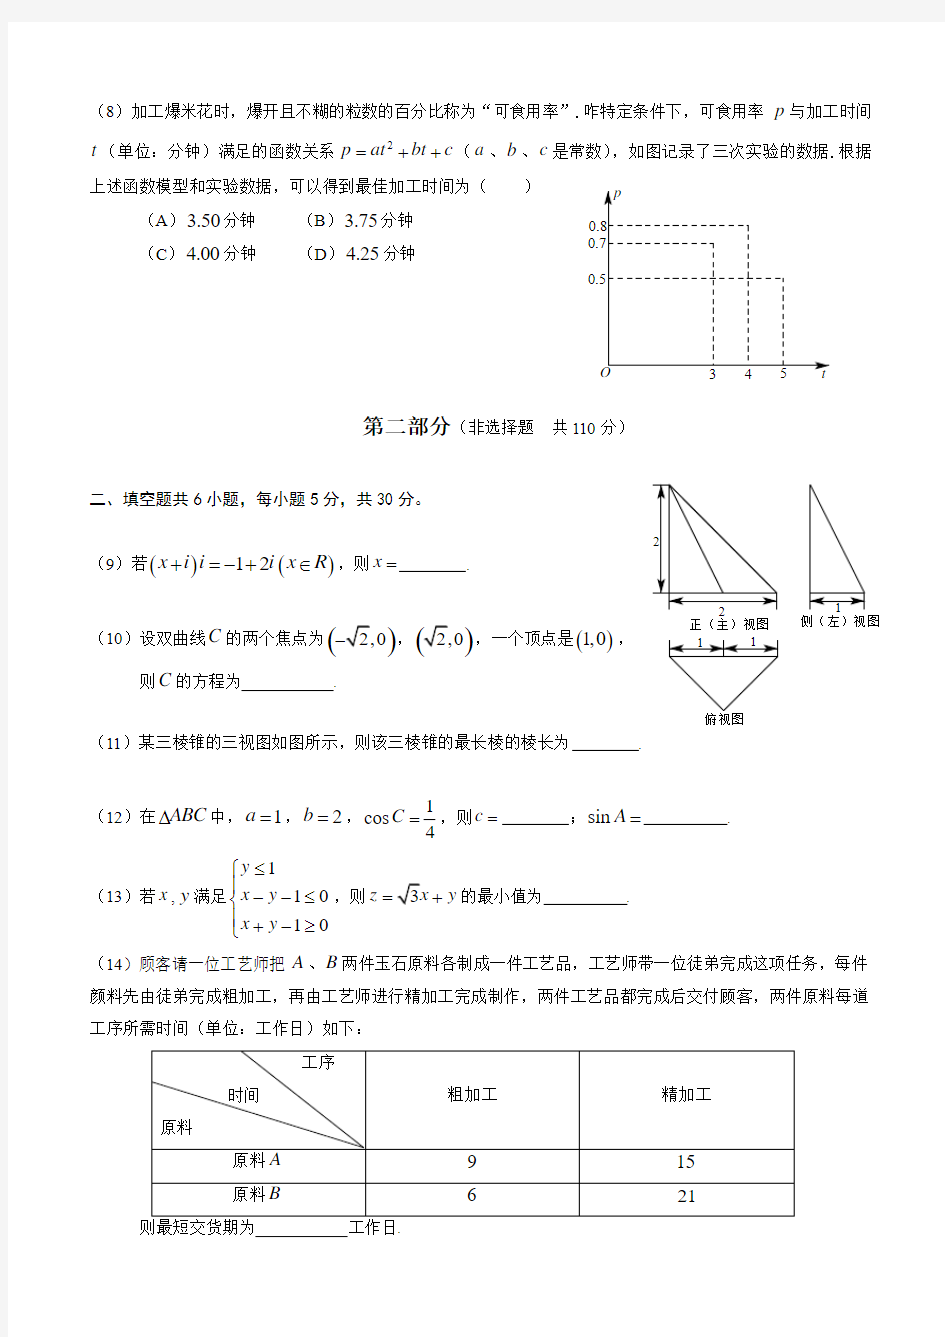 2014年北京高考数学文科试题及标准答案